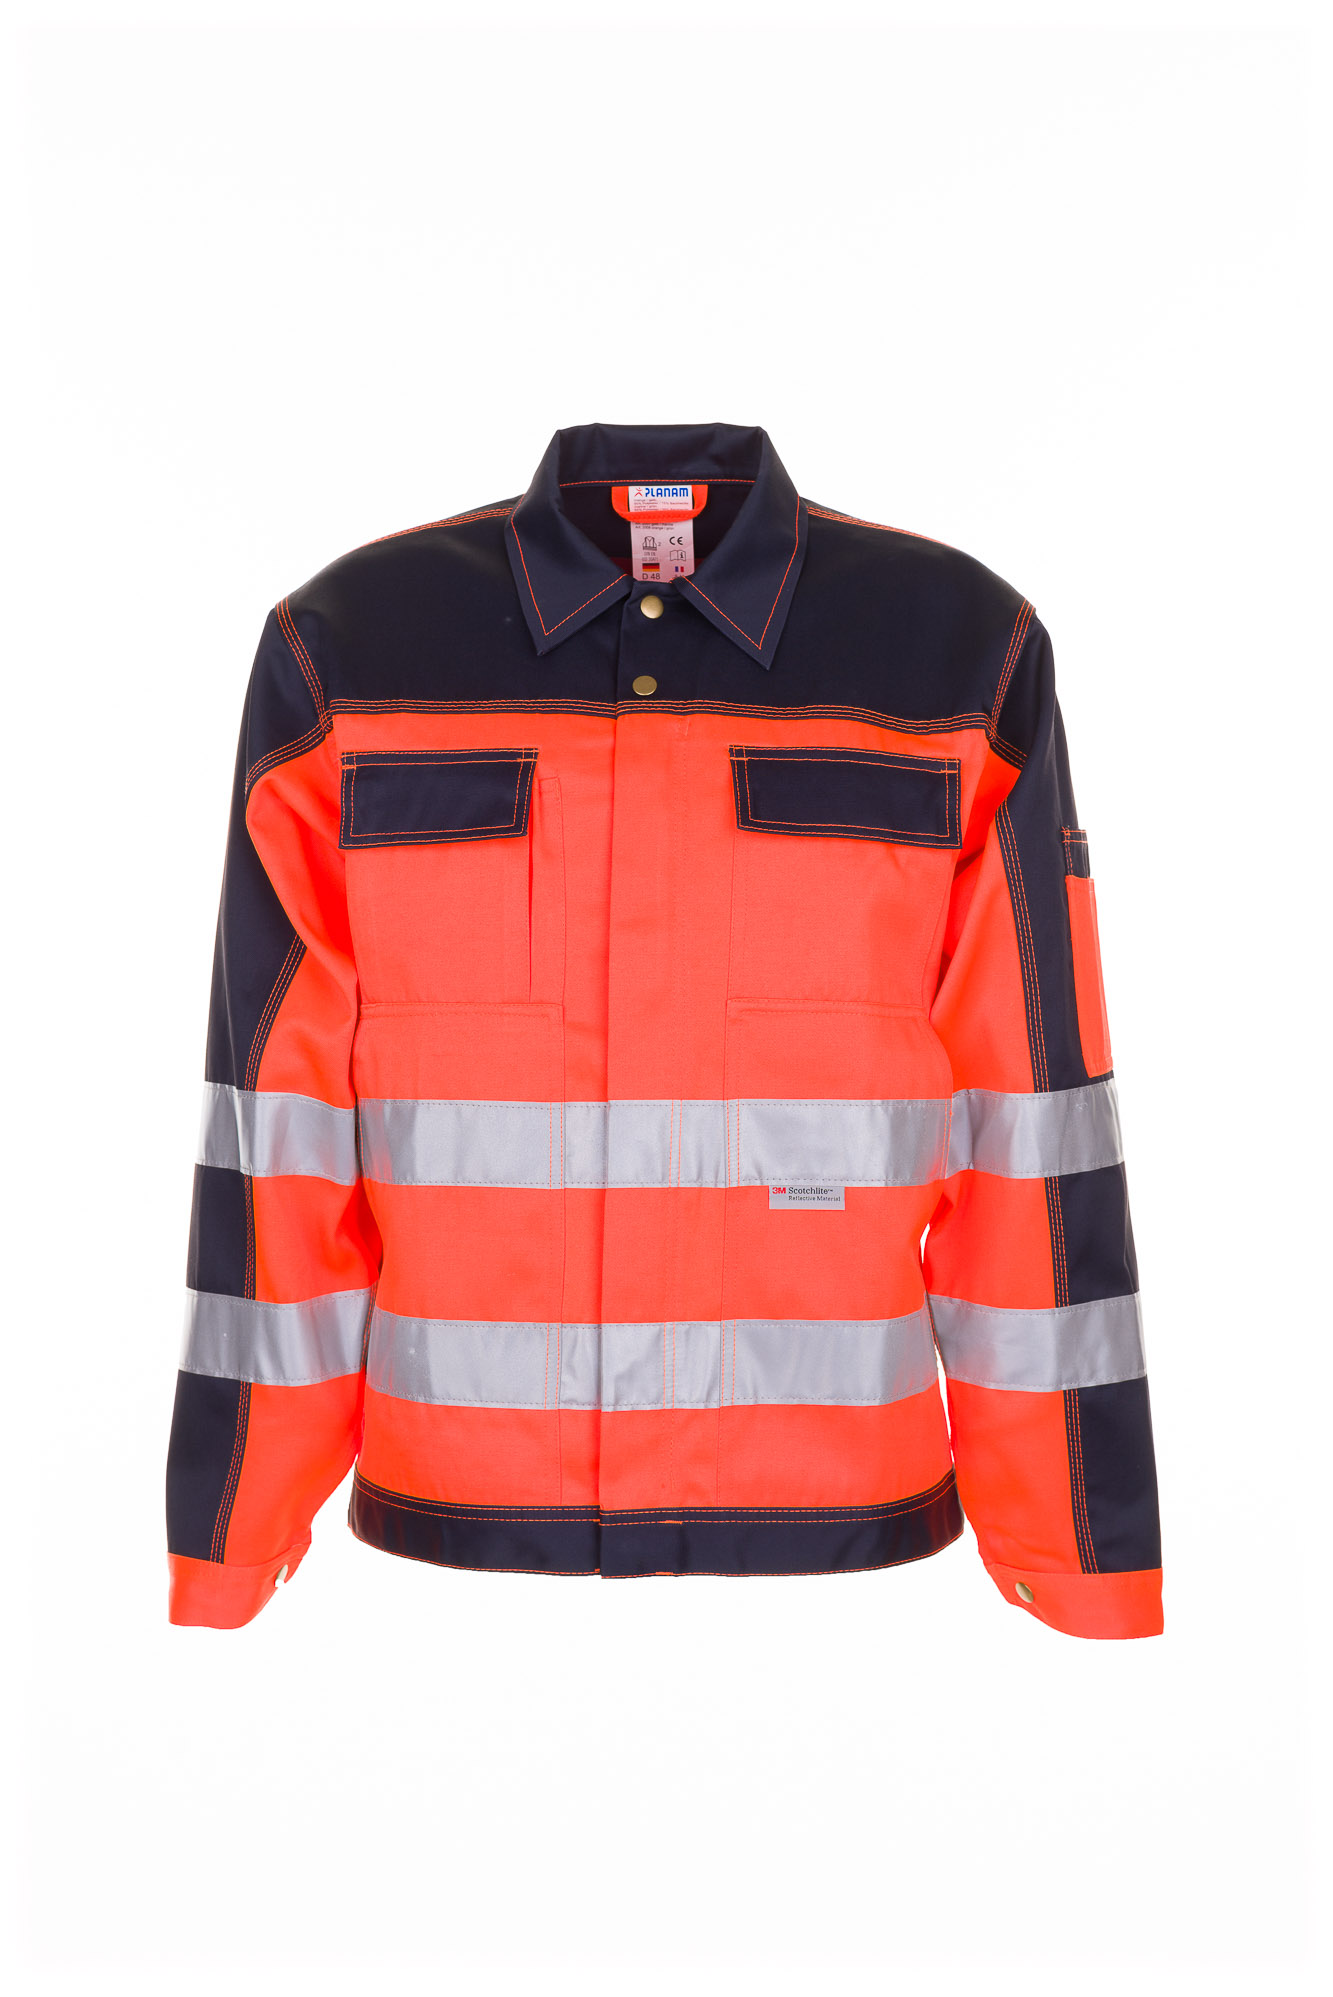 Planam Warnschutz Bundjacke Arbeitsjacke 2-farbig Größe 24 - 110, in 3 Farben